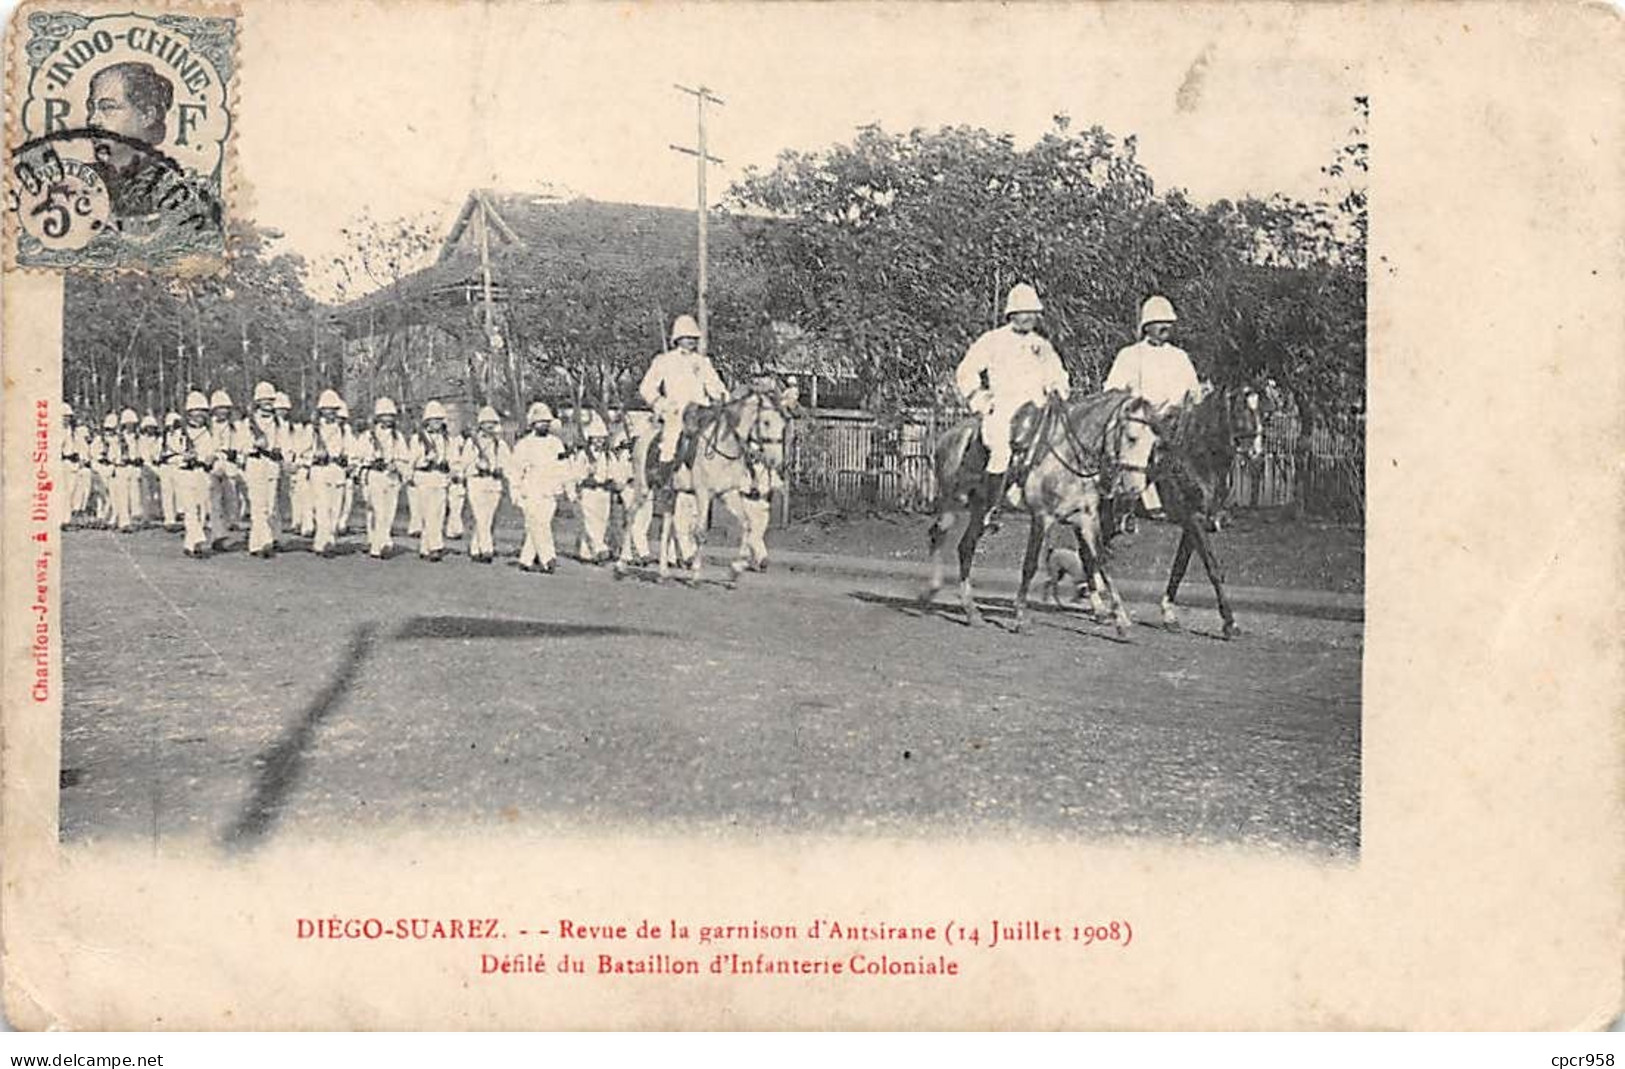 Madagascar - N°72299 - DIEGO-SUAREZ - Revue De La Garnison D'Antsirane - Défilé Du Bataillon D'Infanterie Coloniale - Madagascar